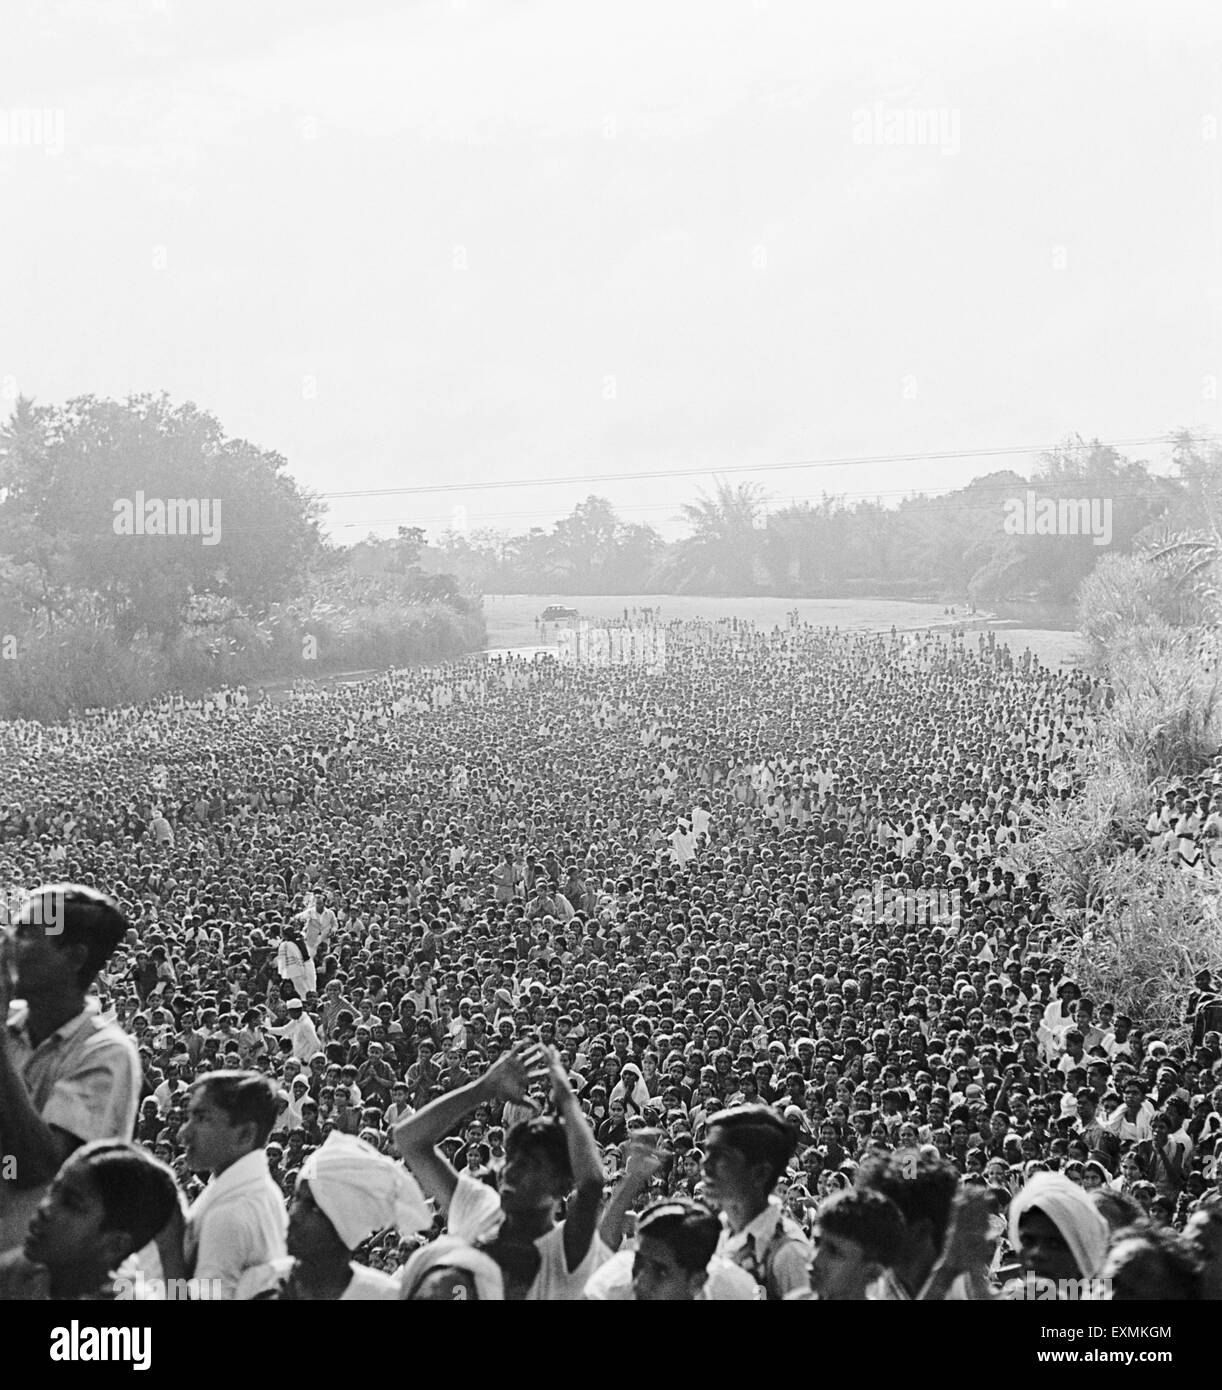 La foule souhaite rencontrer Mahatma Gandhi à Madras, Inde, Asie, ancienne image du millésime des années 1900 Banque D'Images